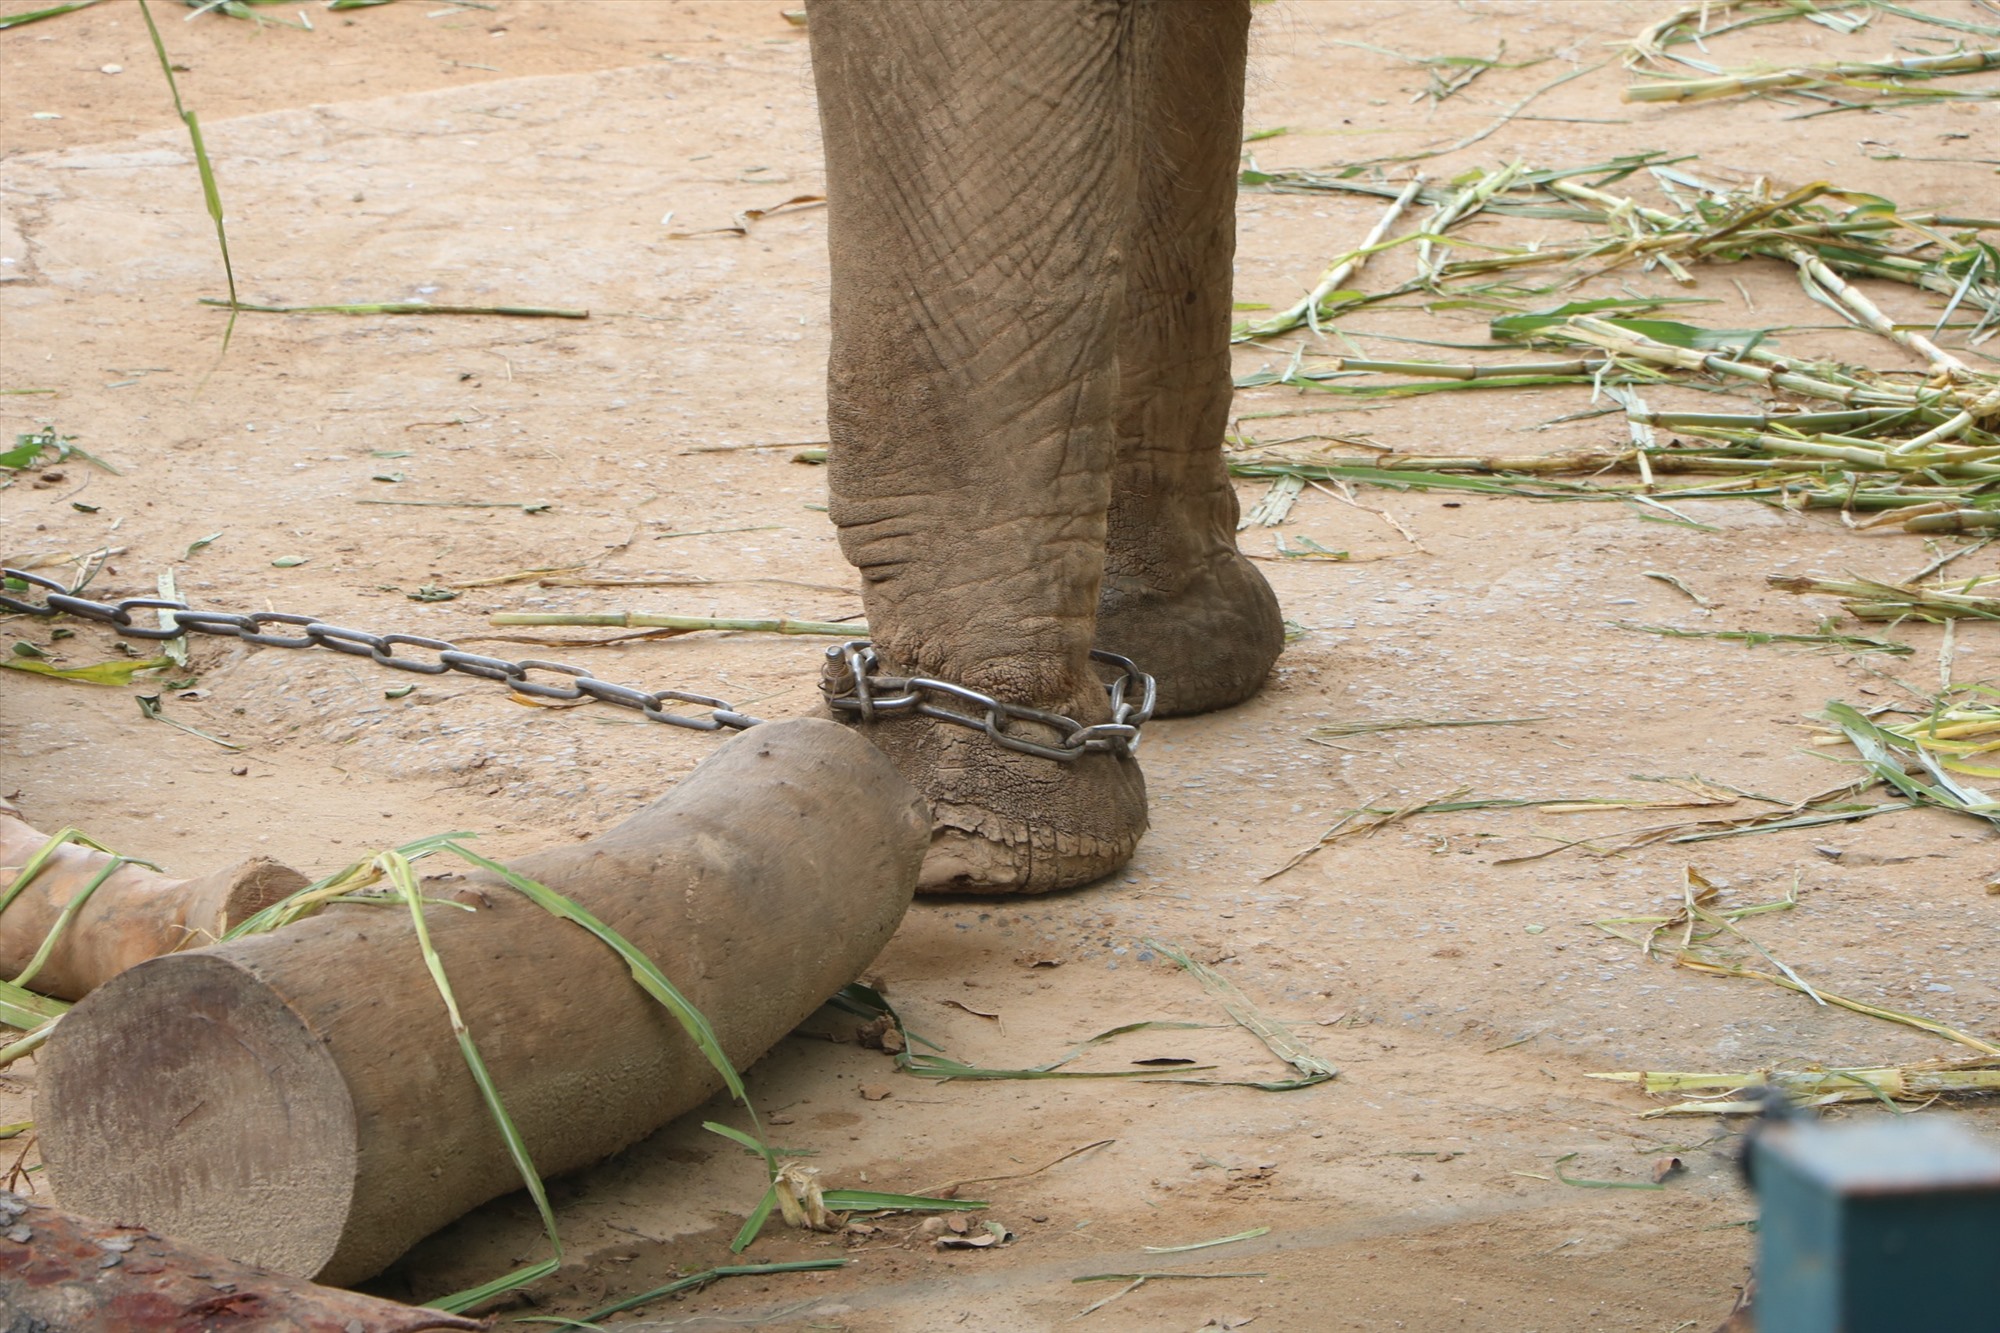 Mỗi con voi có trọng lượng hơn 2 tấn, nếu xảy ra đánh nhau thì không thể can thiệp được, nên đơn vị phải xích chân lại. Việc xích chân chỉ để khống chế, đảm bảo khoảng cách 2 con voi, còn dây xích vẫn dài. Đây là biện pháp nhằm đảm bảo an toàn tính mạng cho cả voi và nhân viên trực tiếp chăm sóc voi.